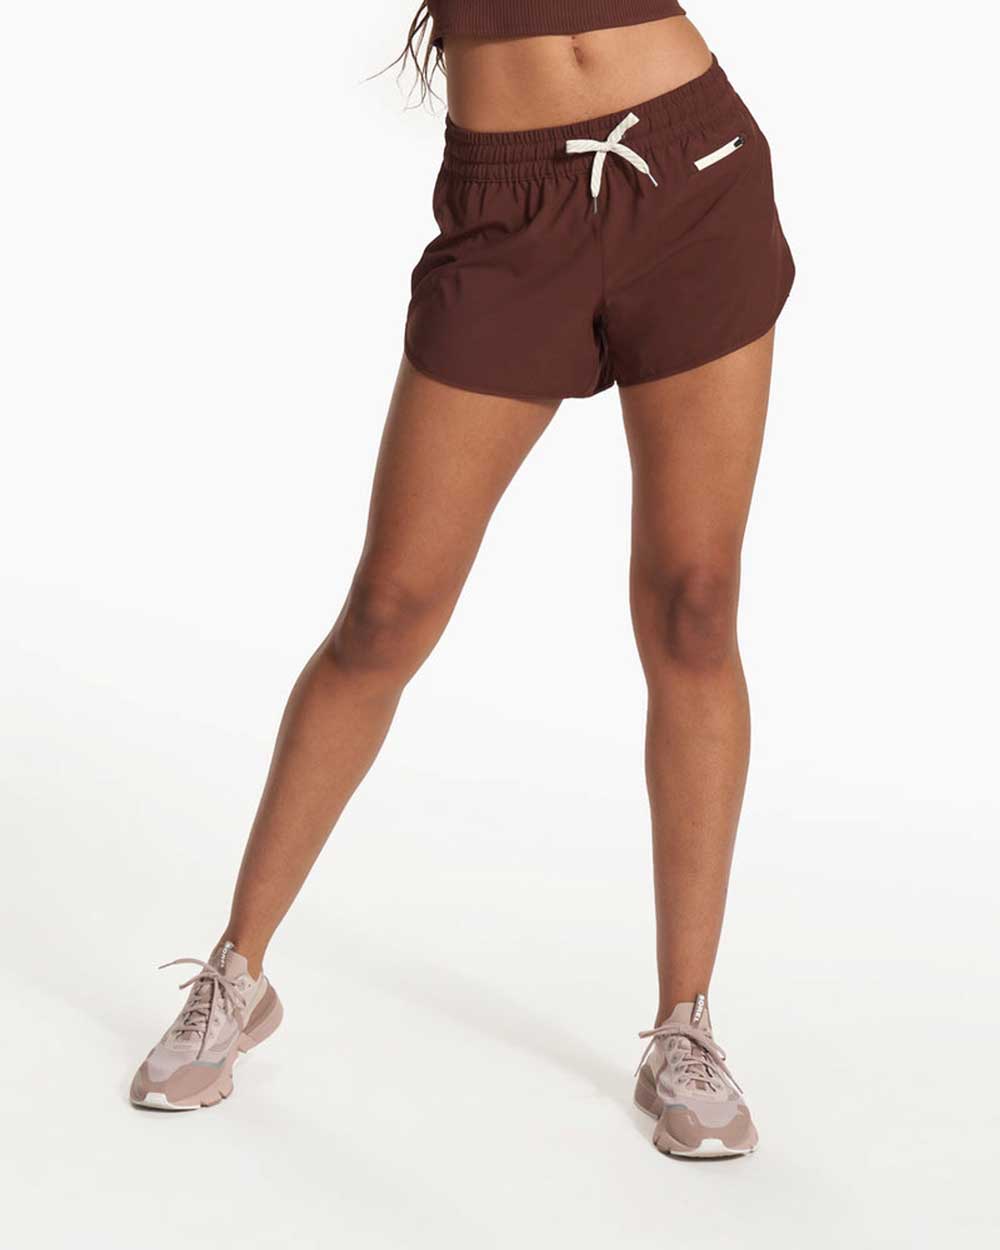 Vuori Clementine 2.0 Shorts - Women's 4 Inseam